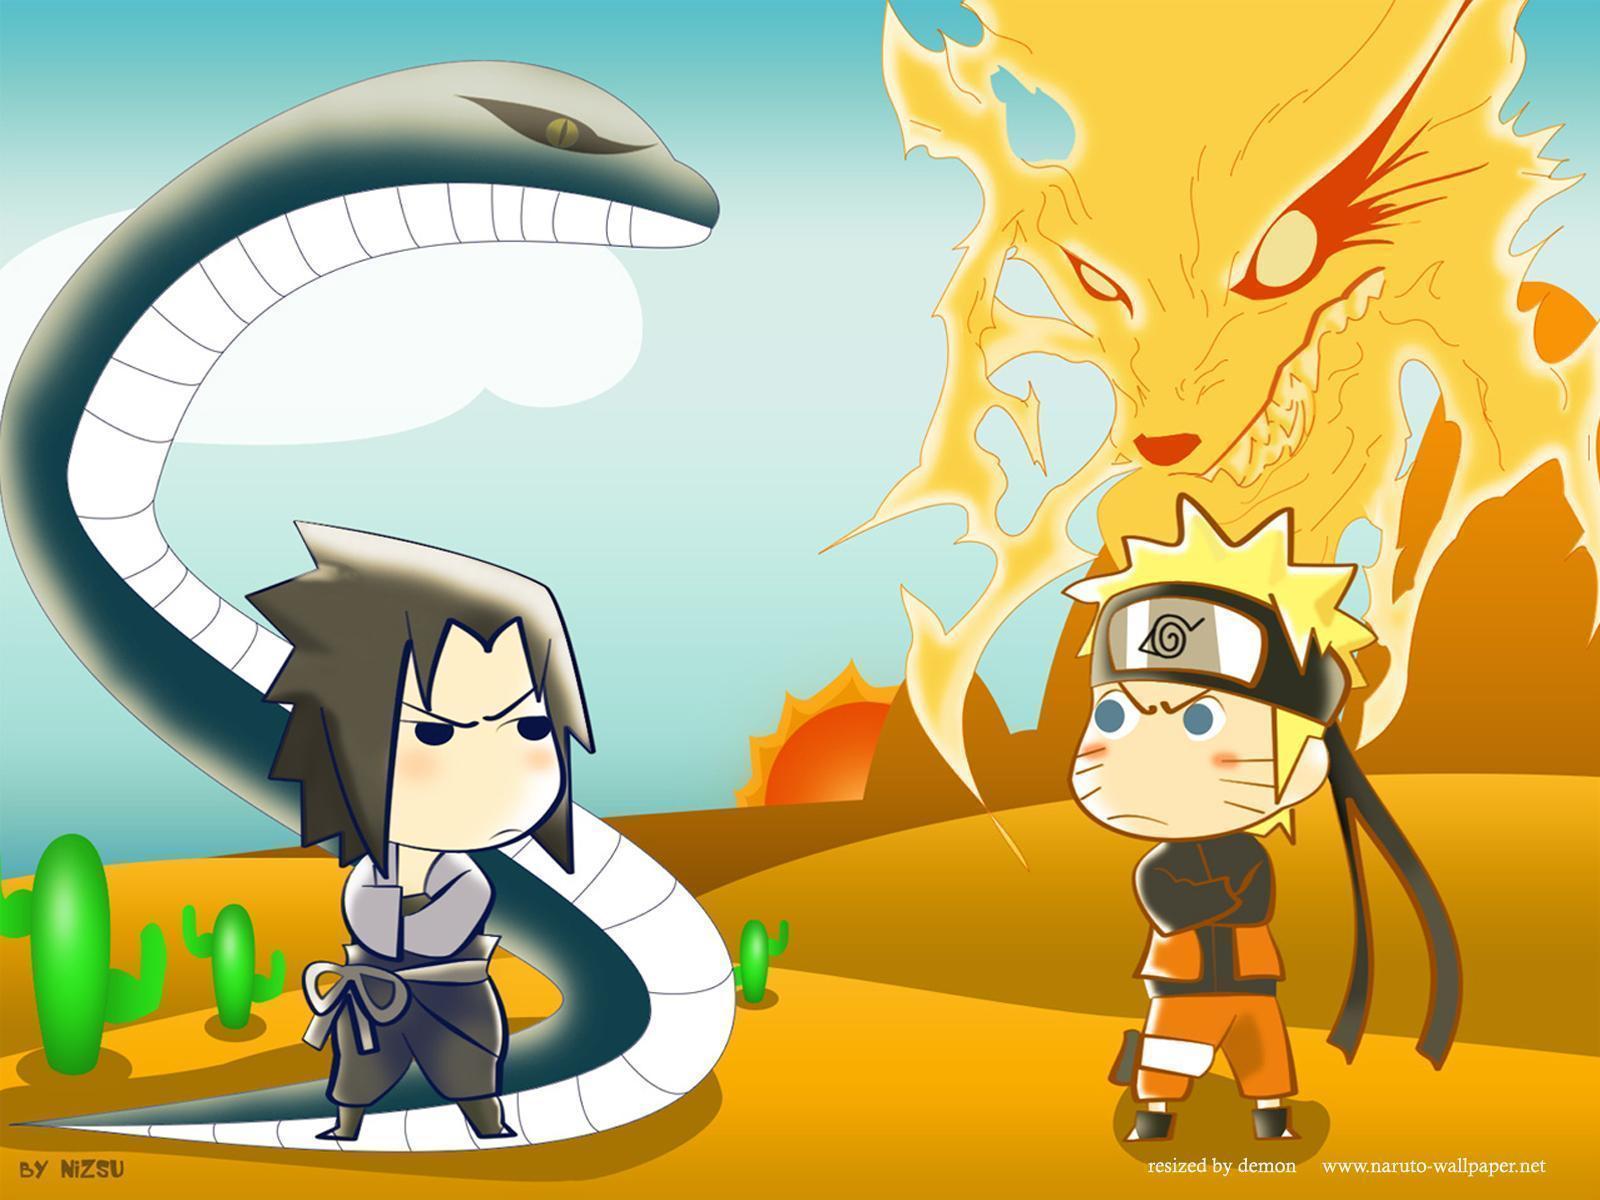 Naruto vs Sasuke Wallpaper, wallpaper, Naruto vs Sasuke